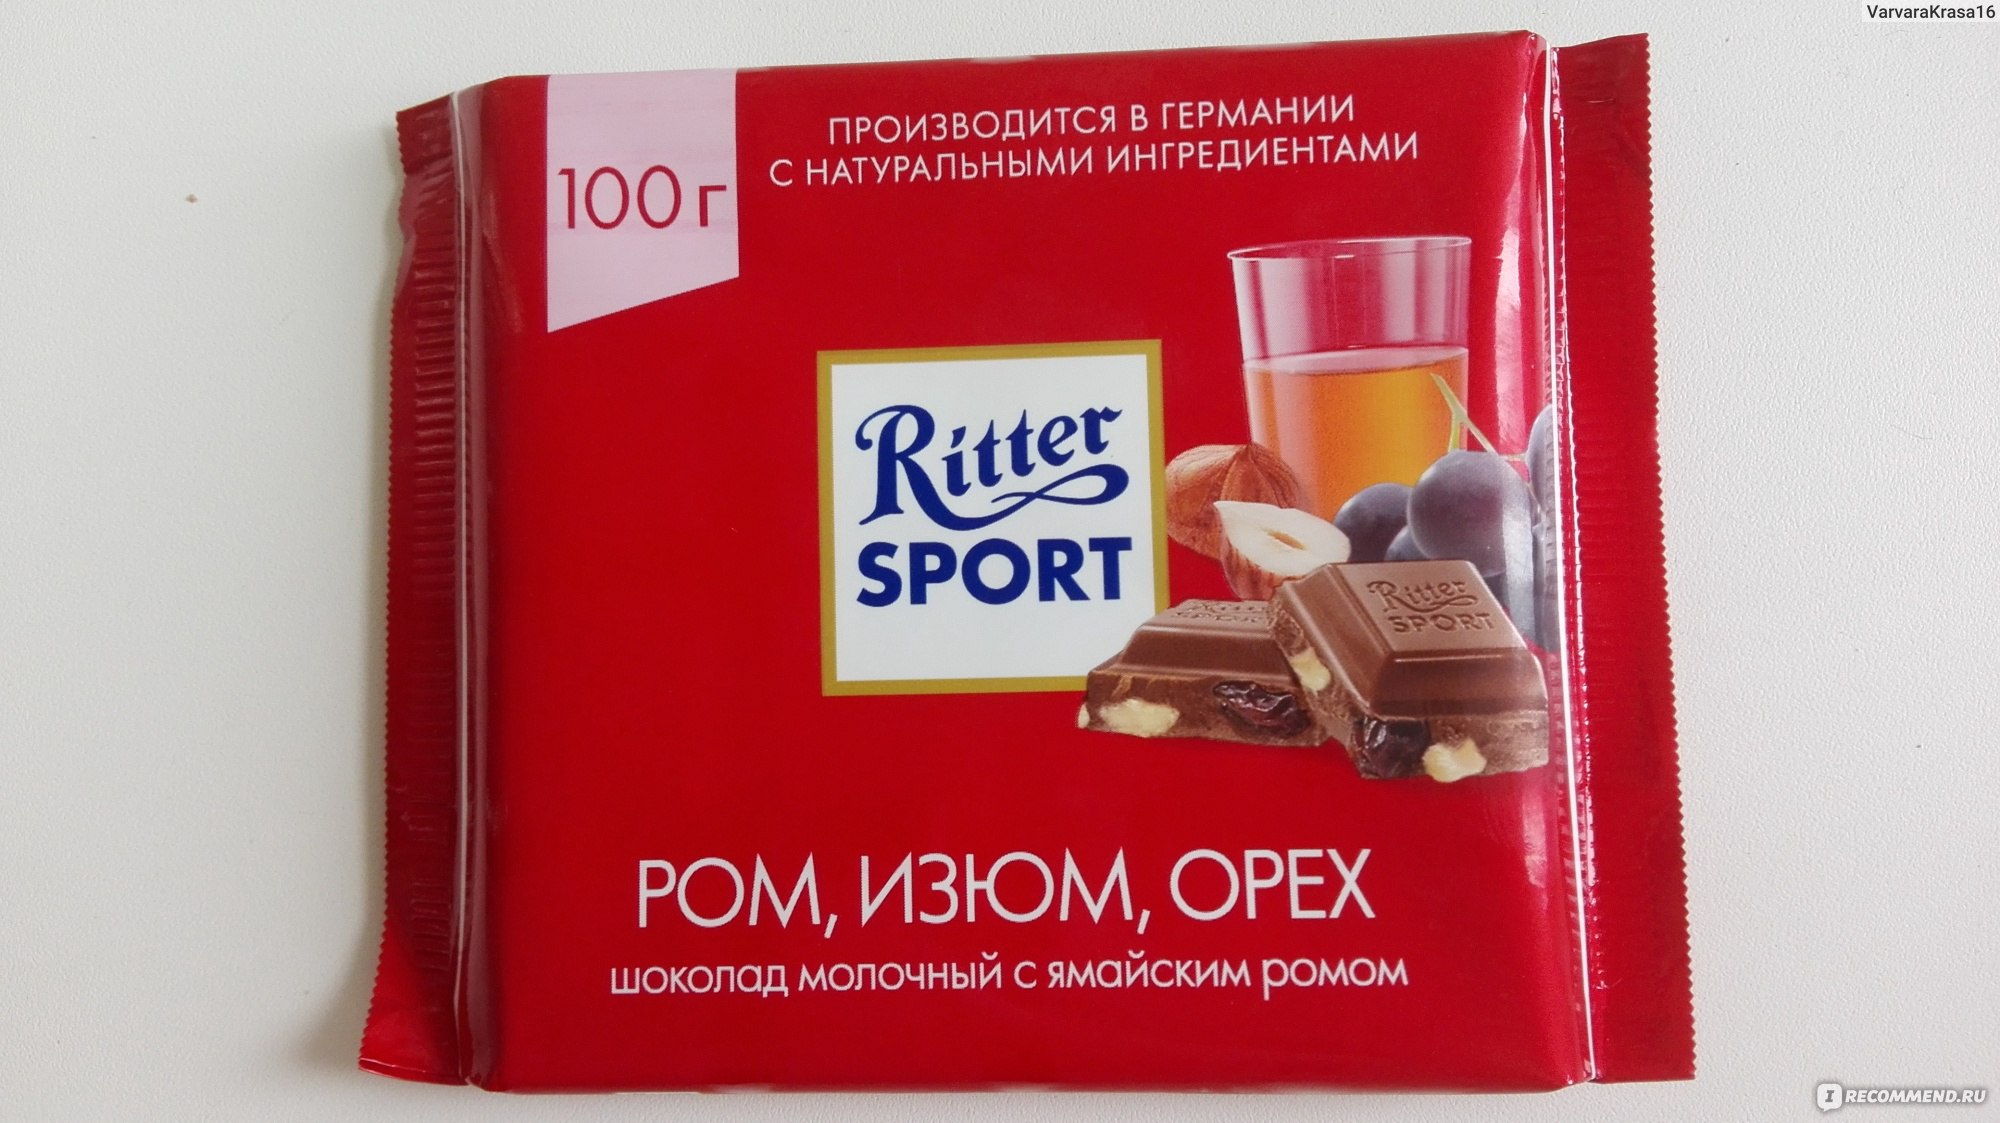 Шоколад Риттер спорт в красной упаковке